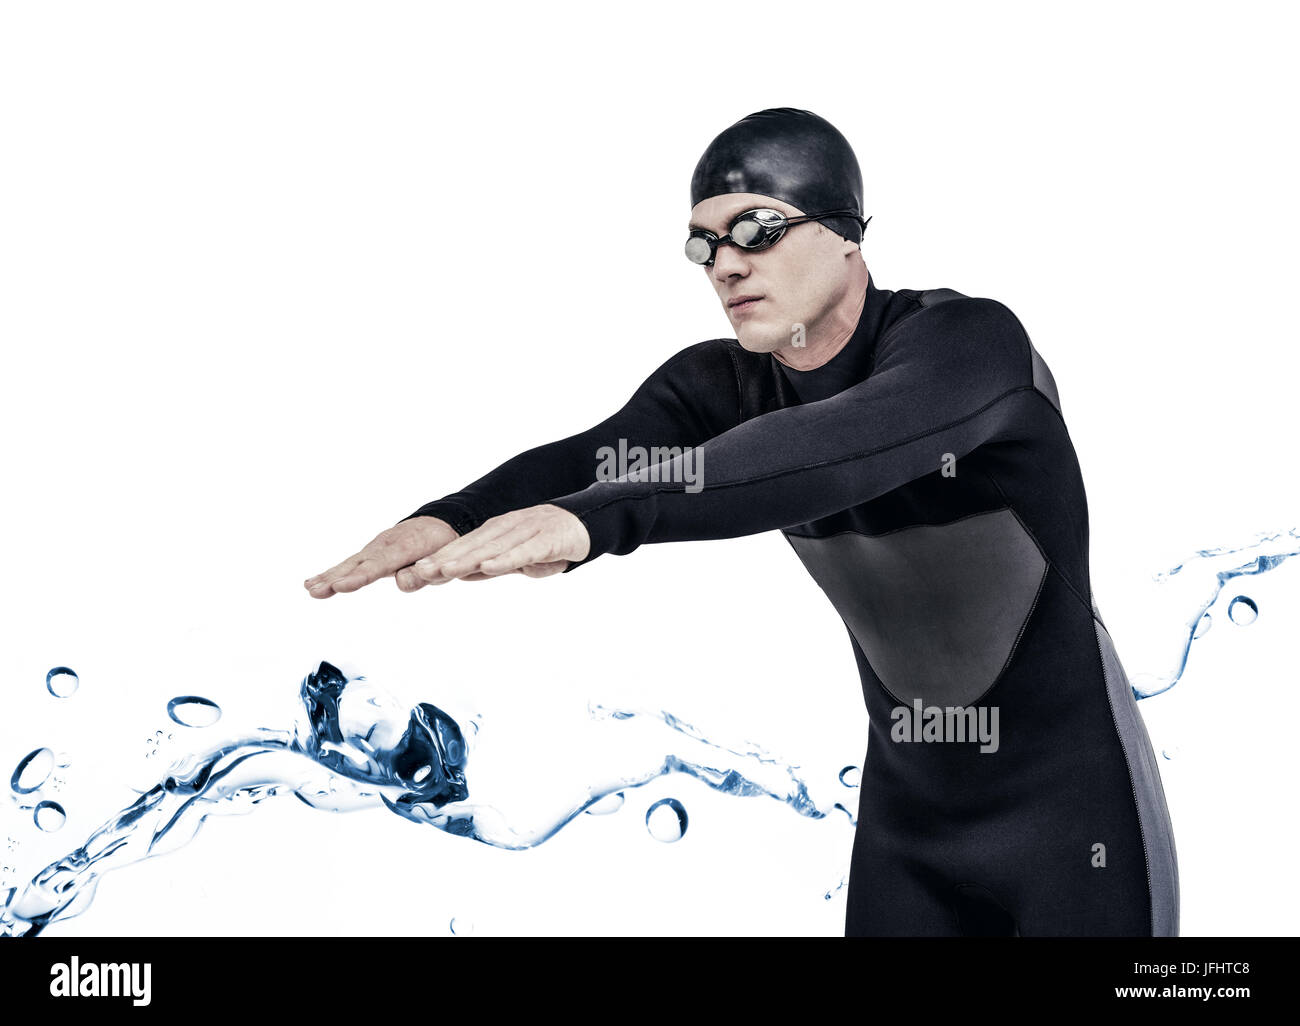 Zusammengesetztes Bild des Schwimmers im Neoprenanzug beim Tauchen Stockfoto